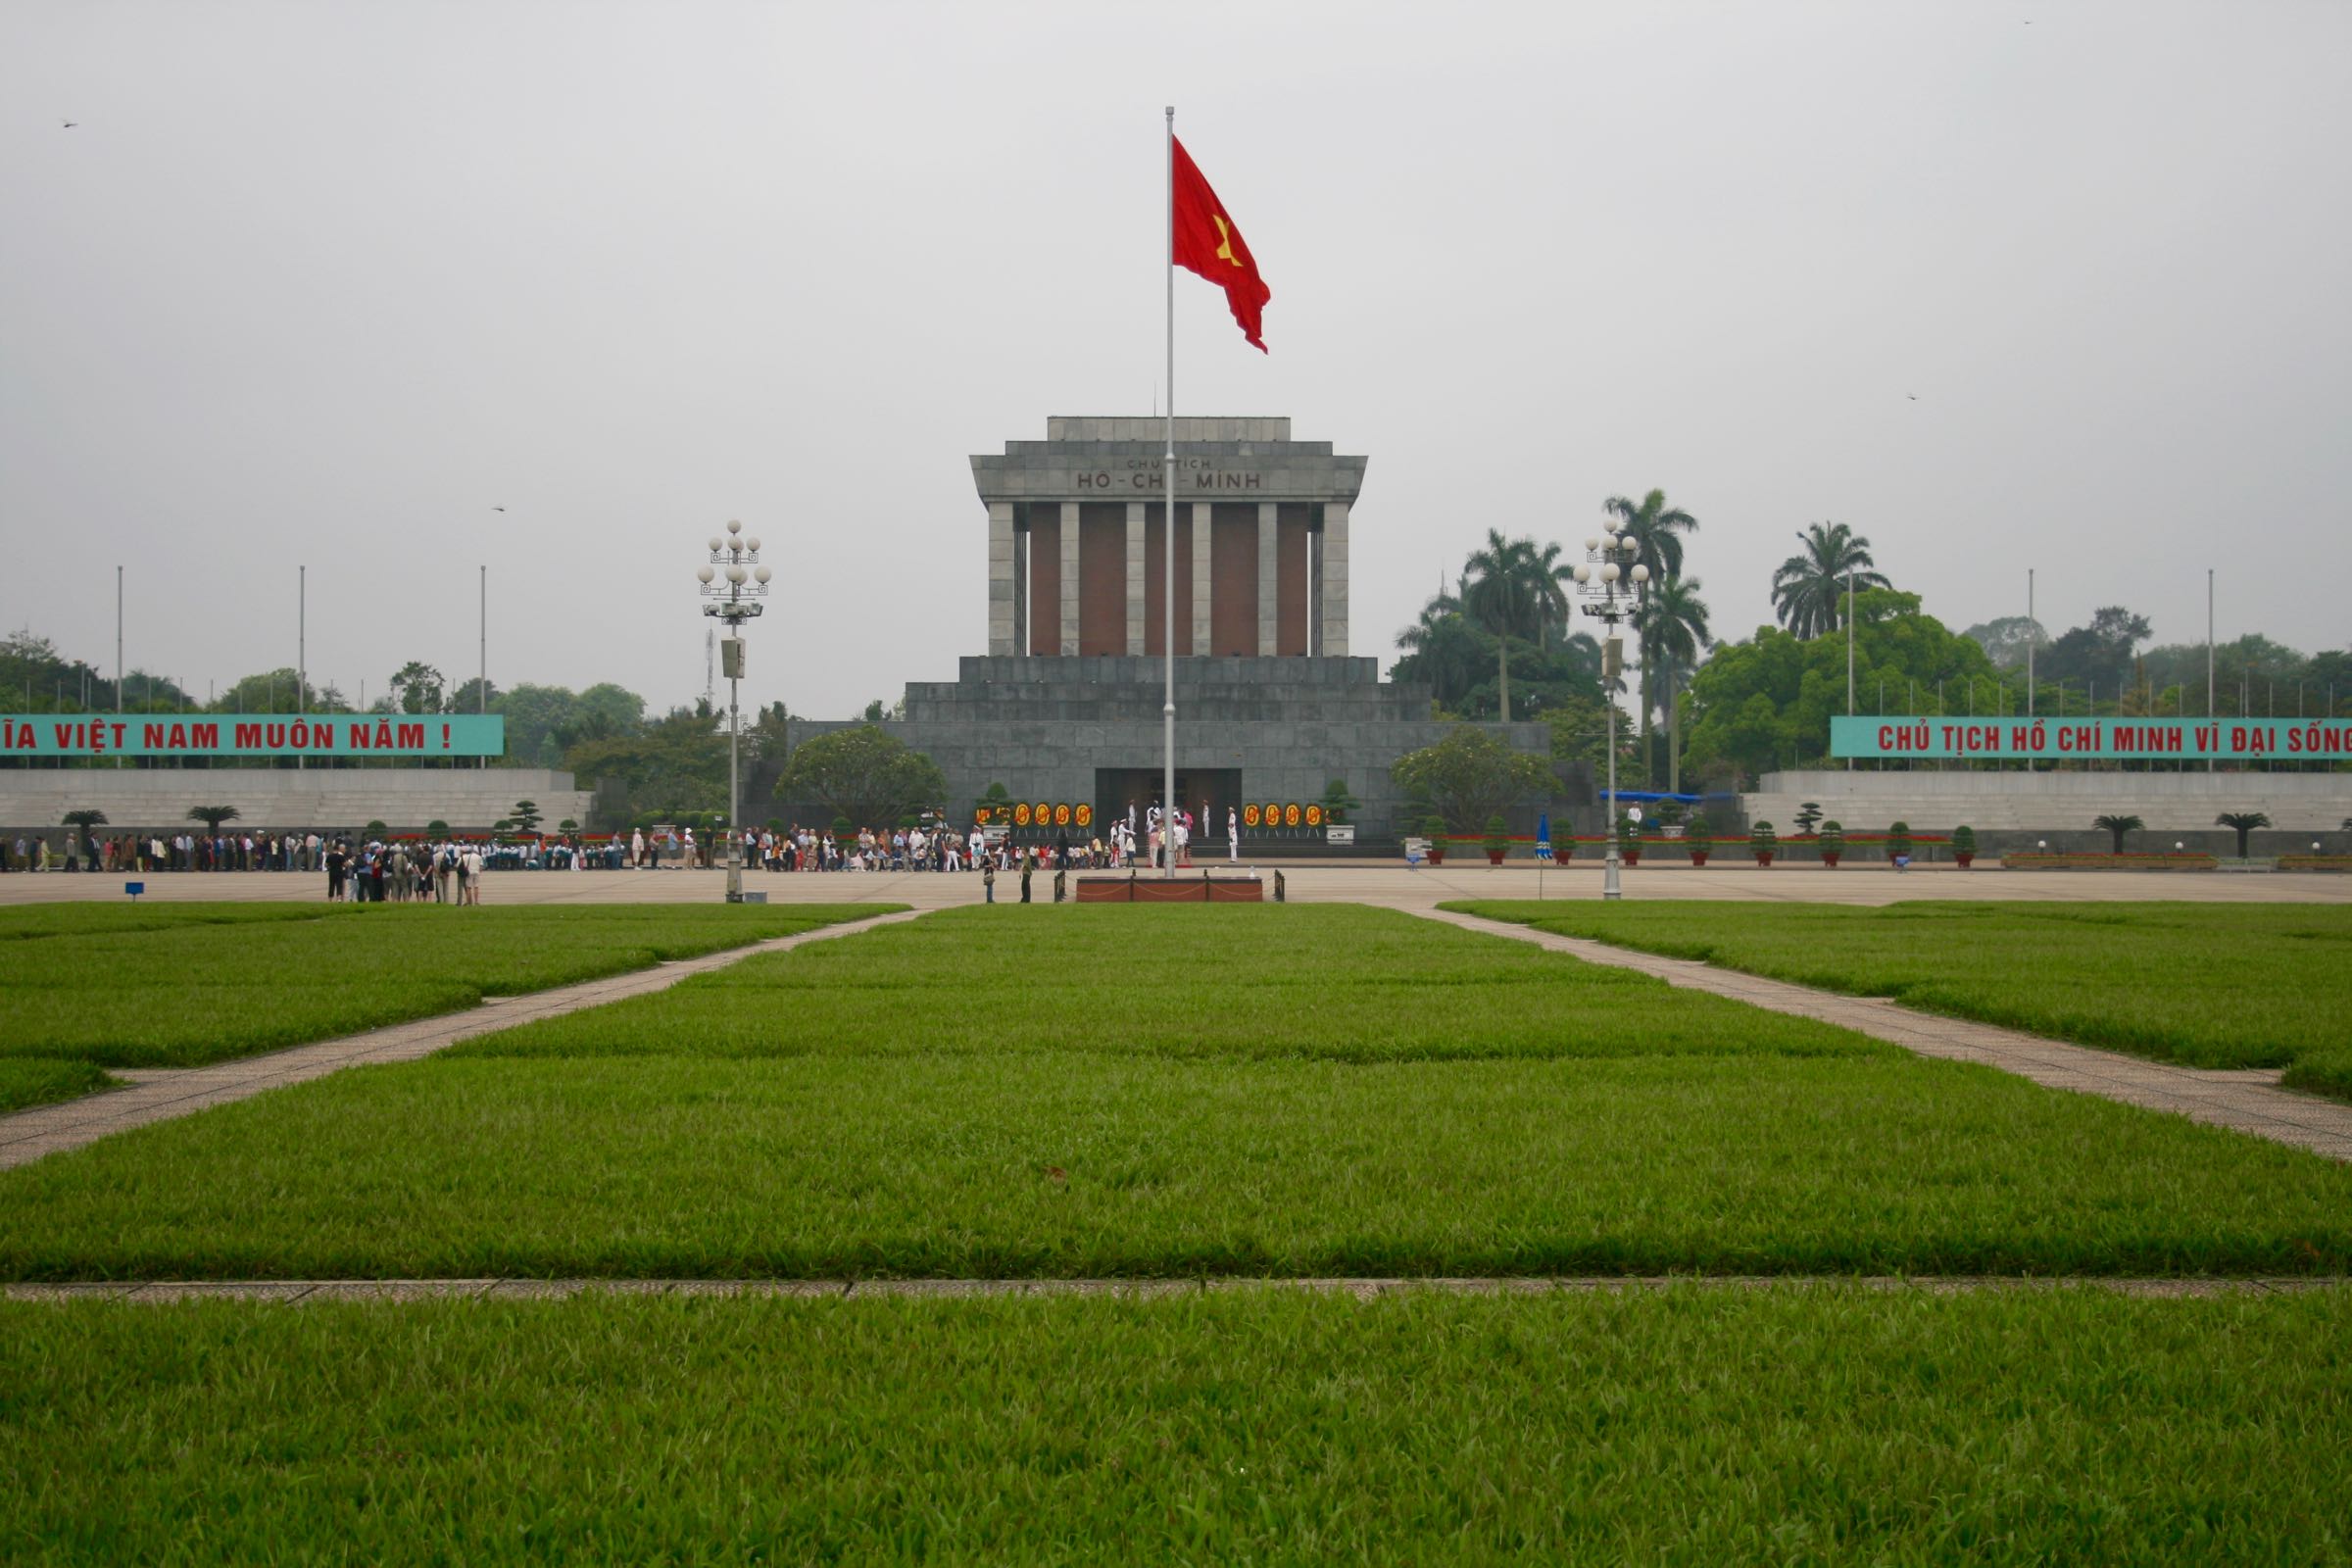 Hồ-Chí-Minh-Mausoleum, Hanoi, Vietnam